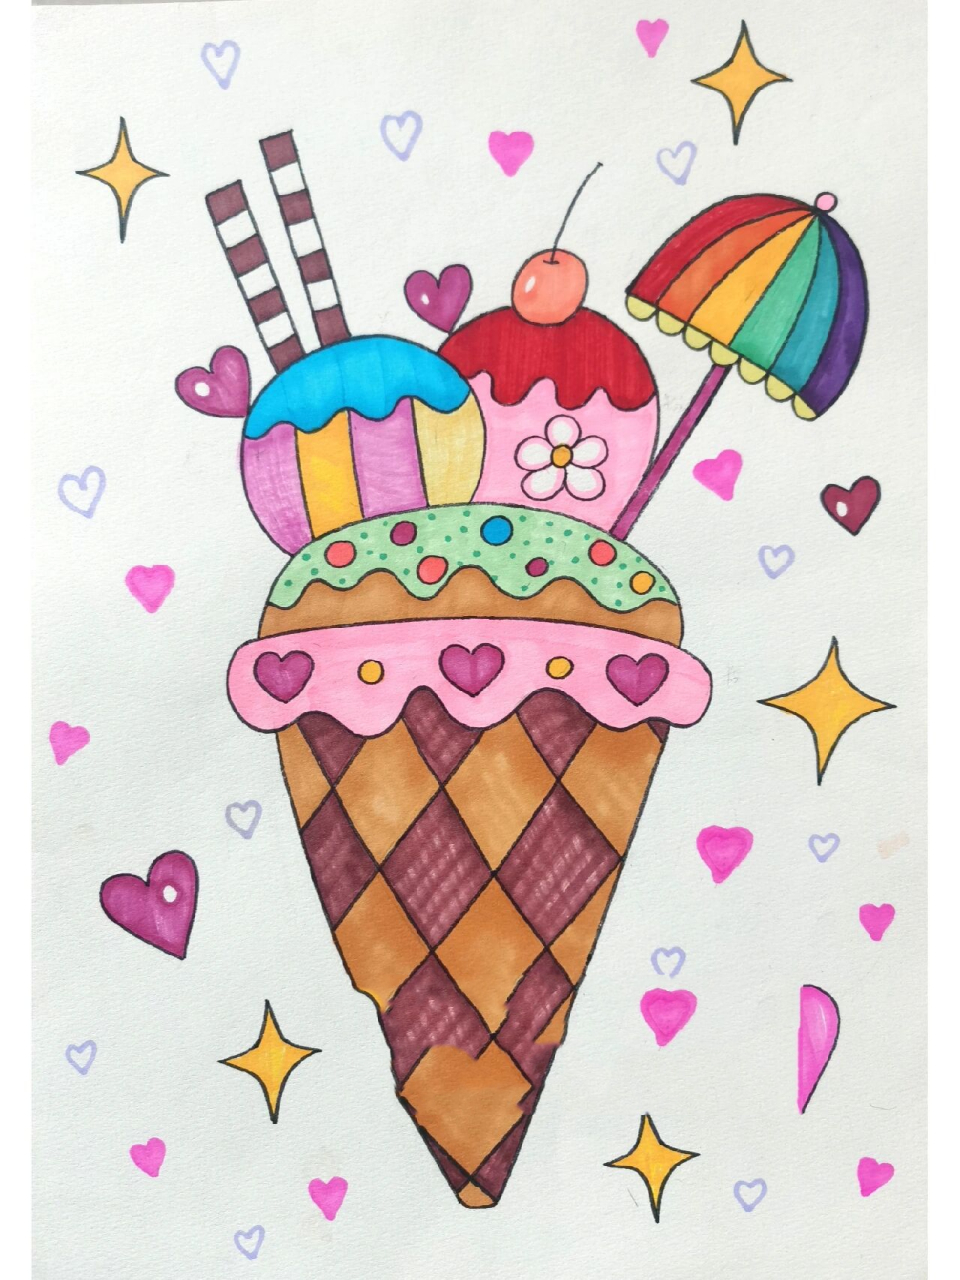 冰淇淋画画简单漂亮图片